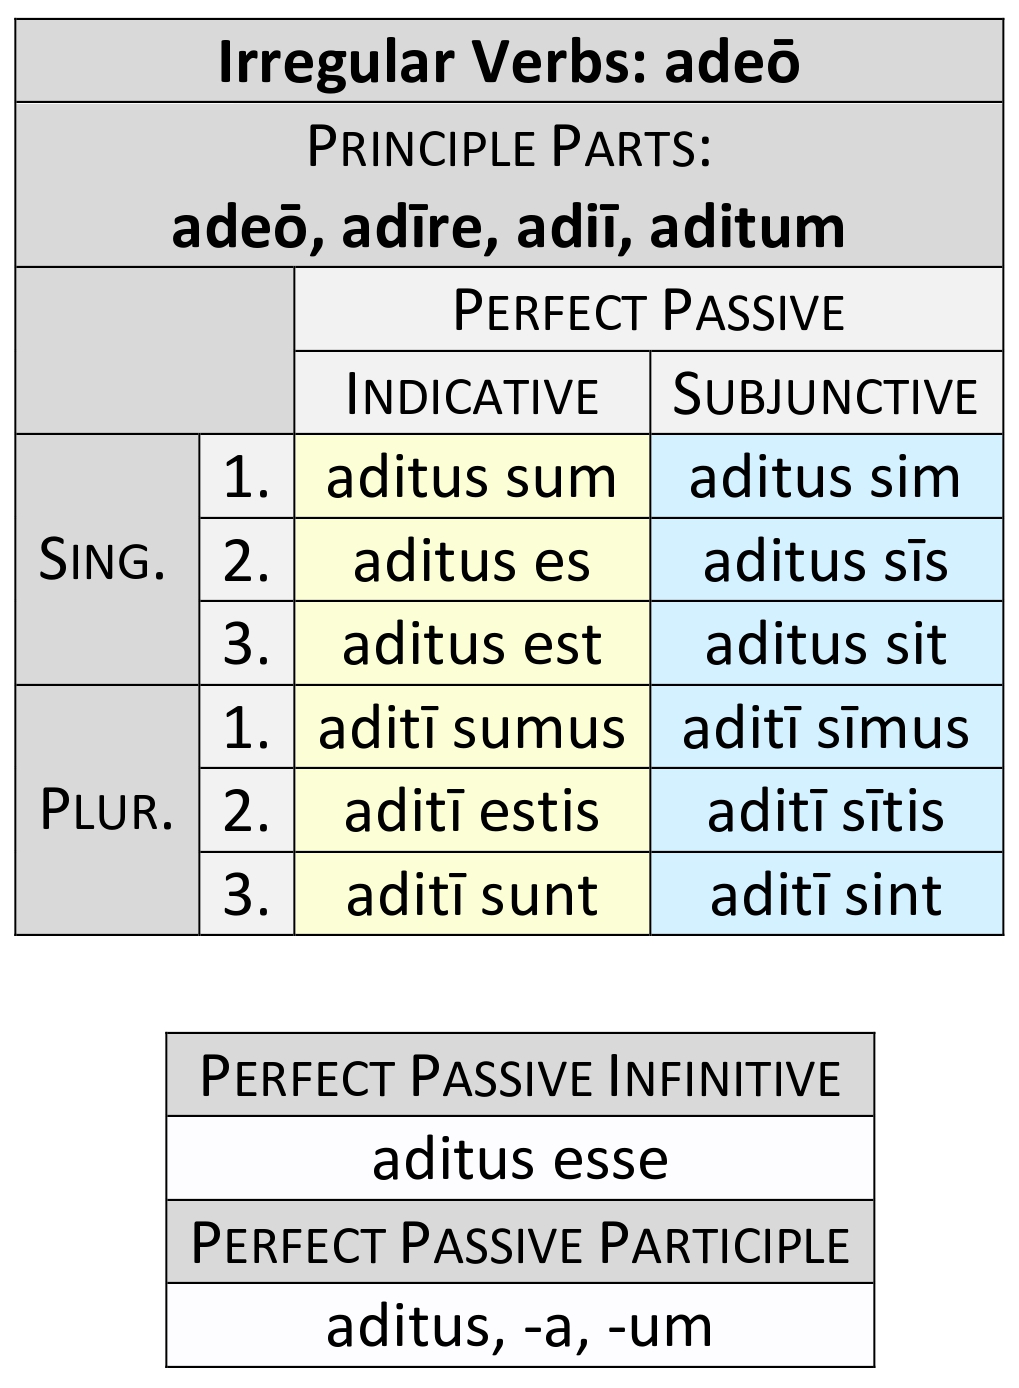 irregular verb adeō perfect passive paradigm